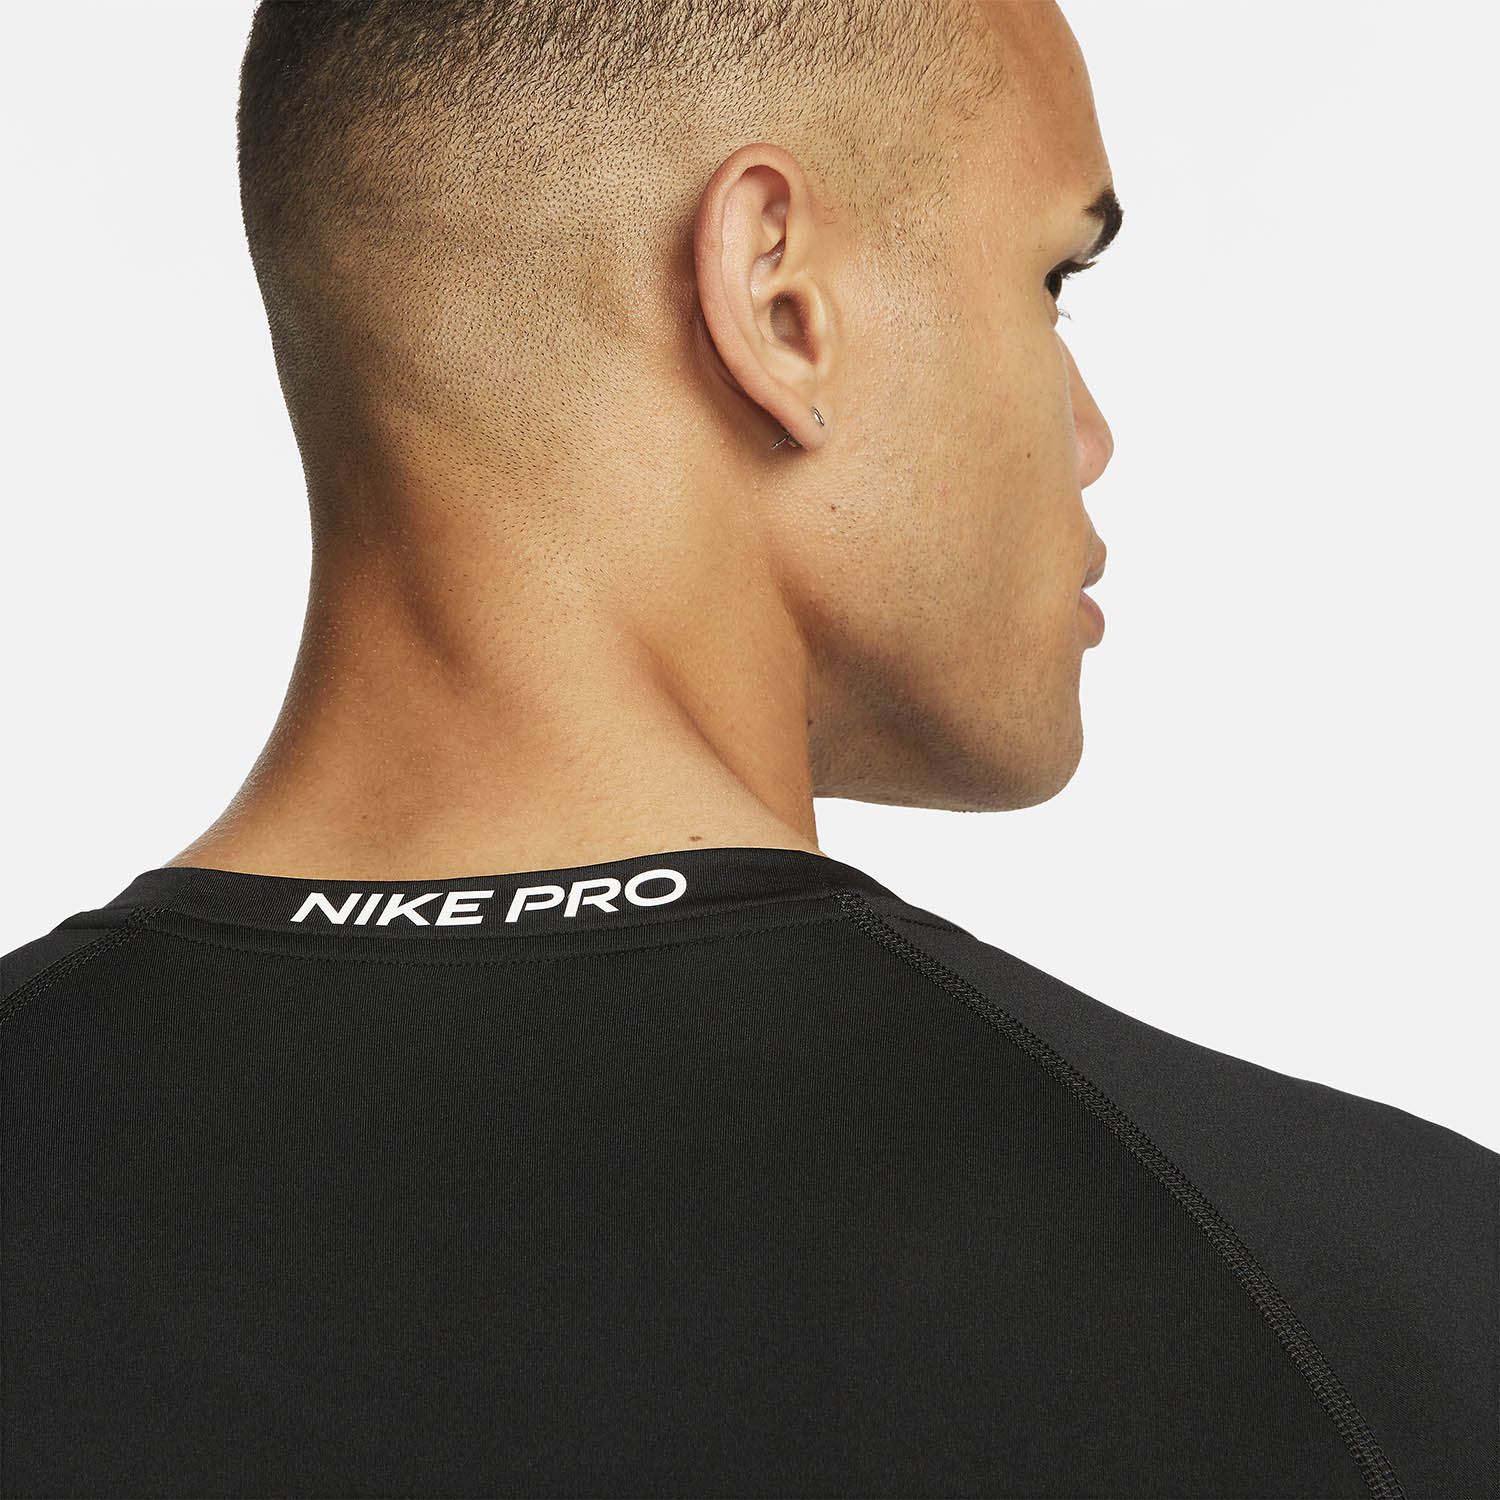 Nike Dri-FIT Logo Men's Training T-Shirt - Black/White